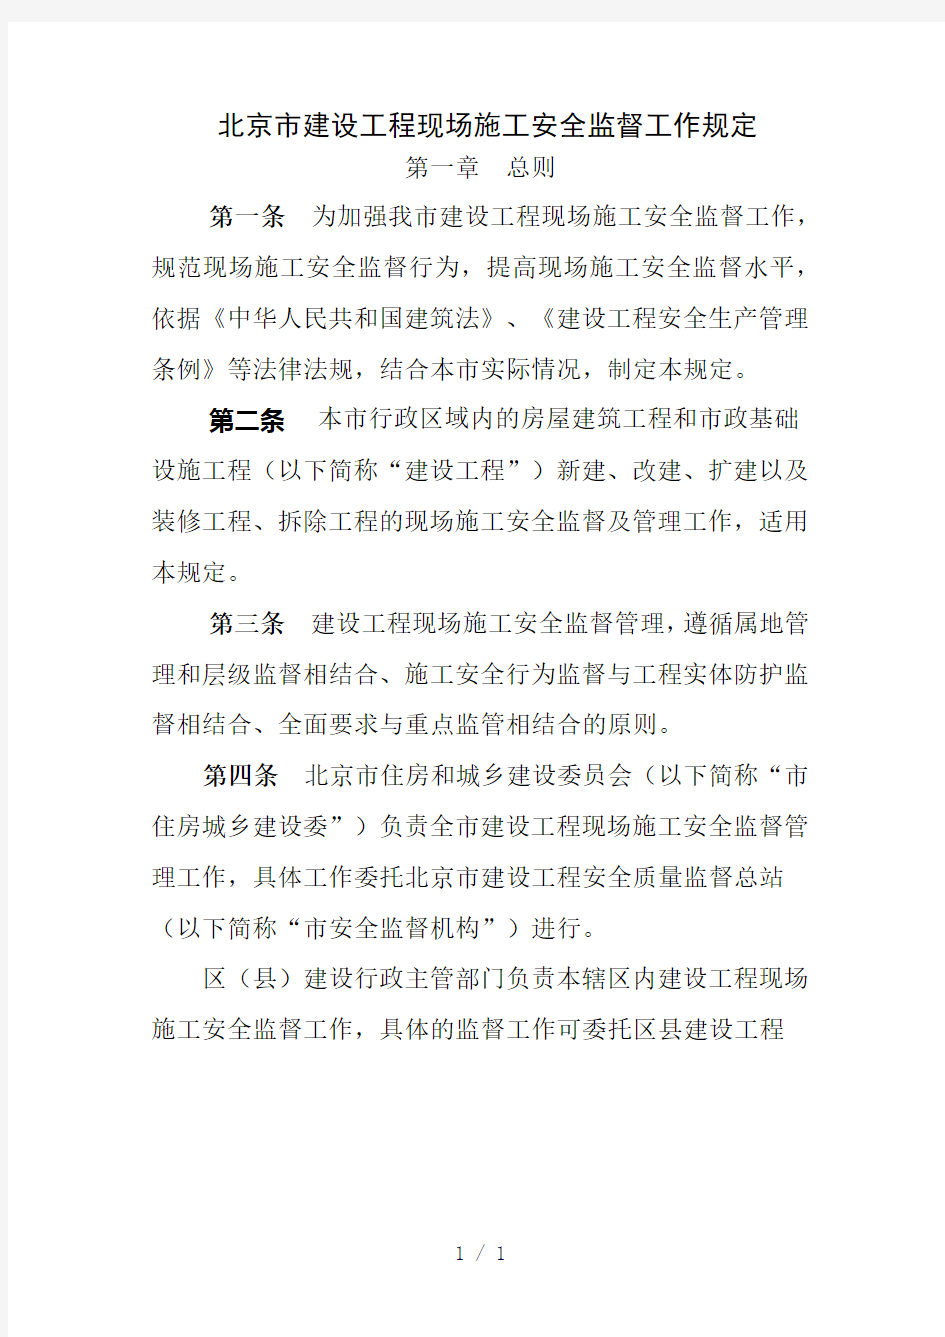 北京市建设工程现场施工安全监督工作规定